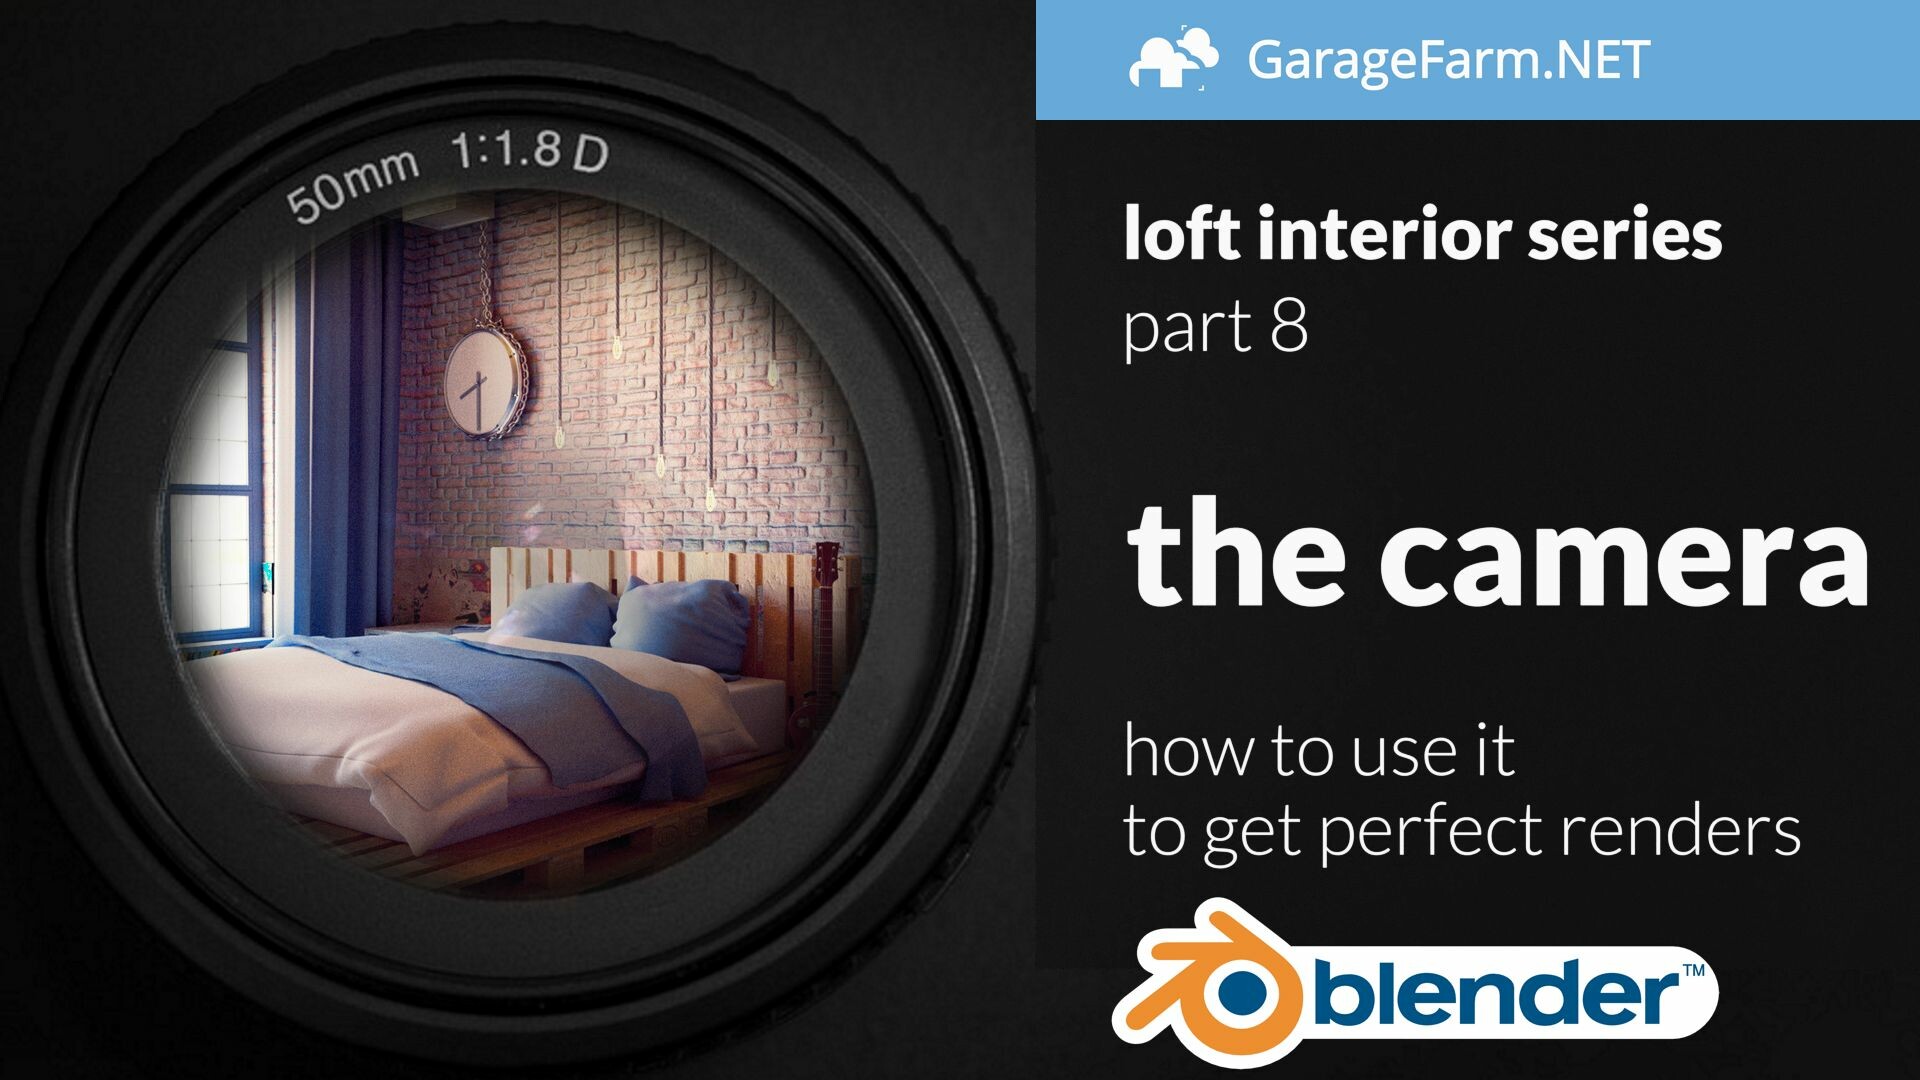 GarageFarm.NET Render Farm - Blender loft interior tutorial series ...
